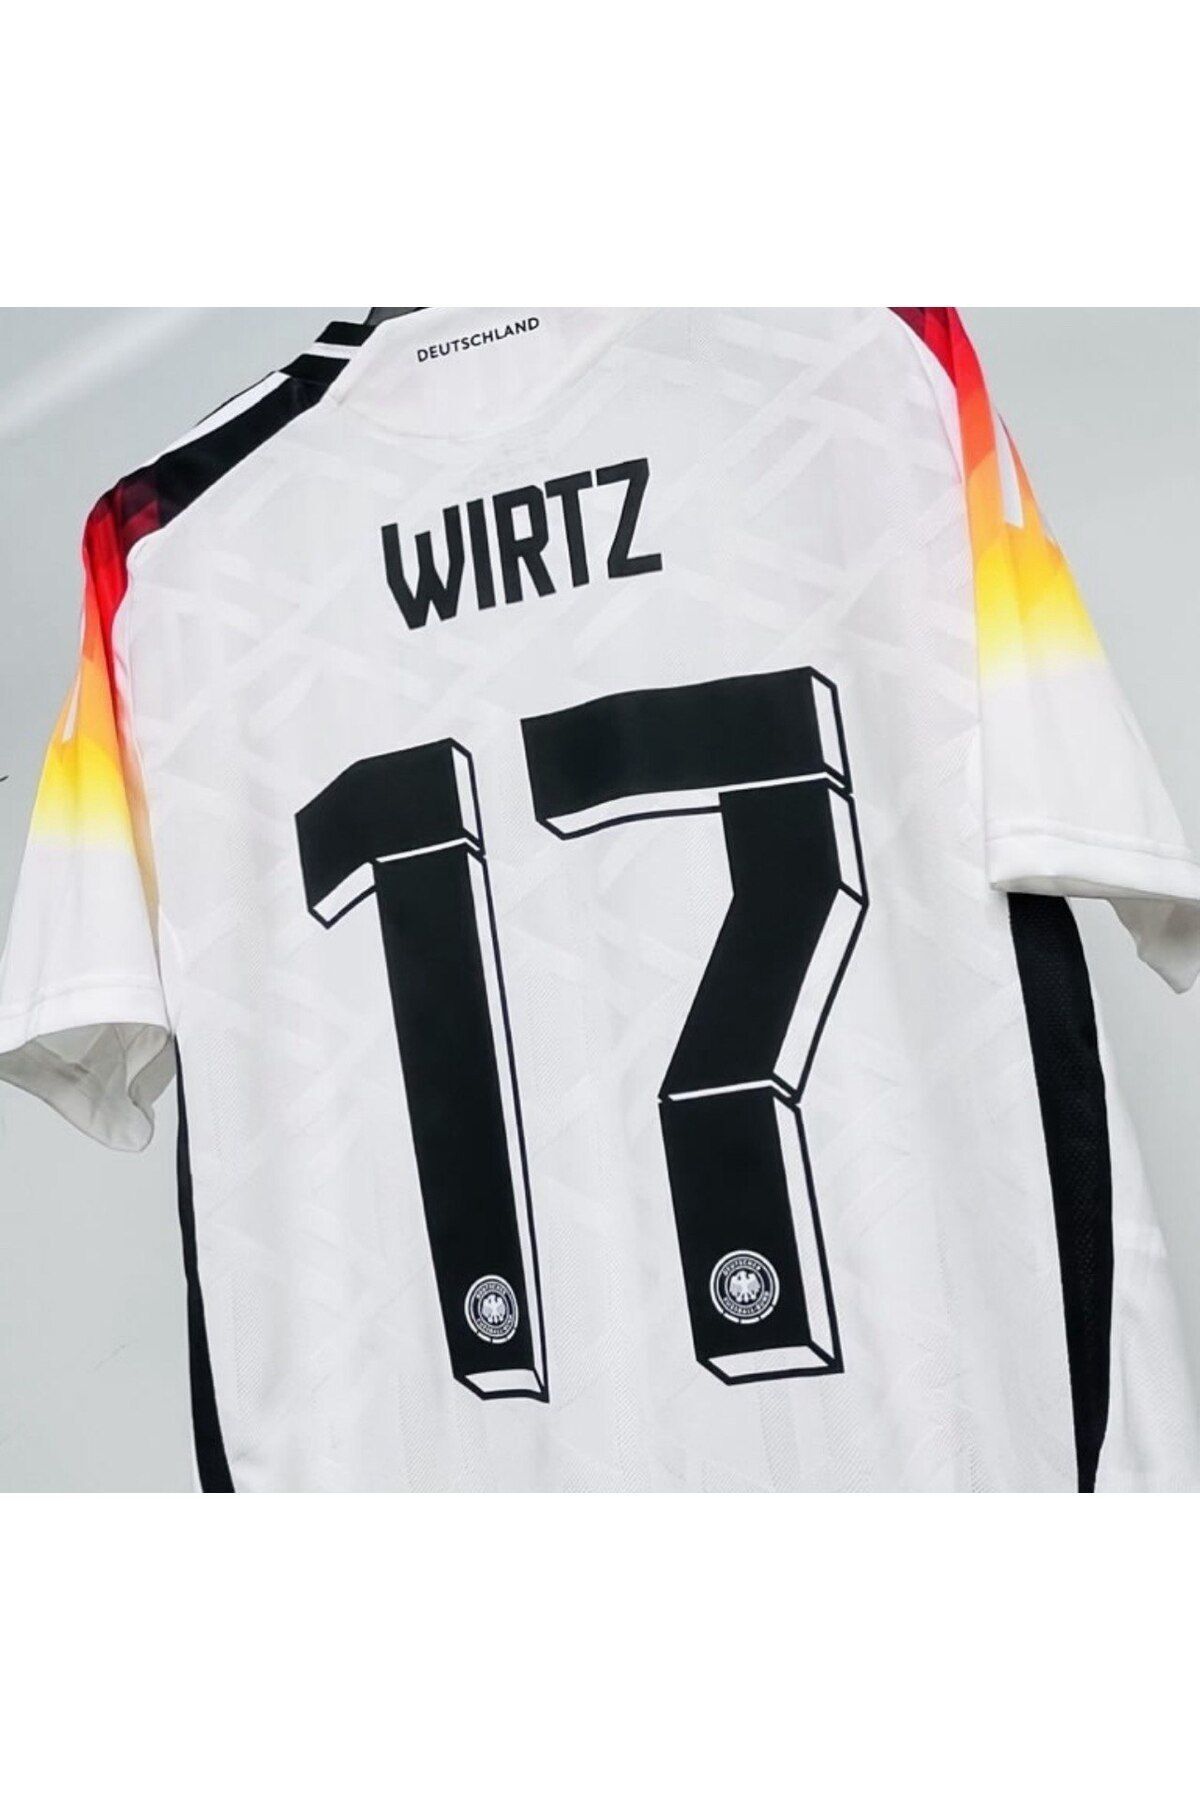 Alaturka Mix Florian Wirtz Almanya Milli Takım Yeni Sezon Forması Beyaz